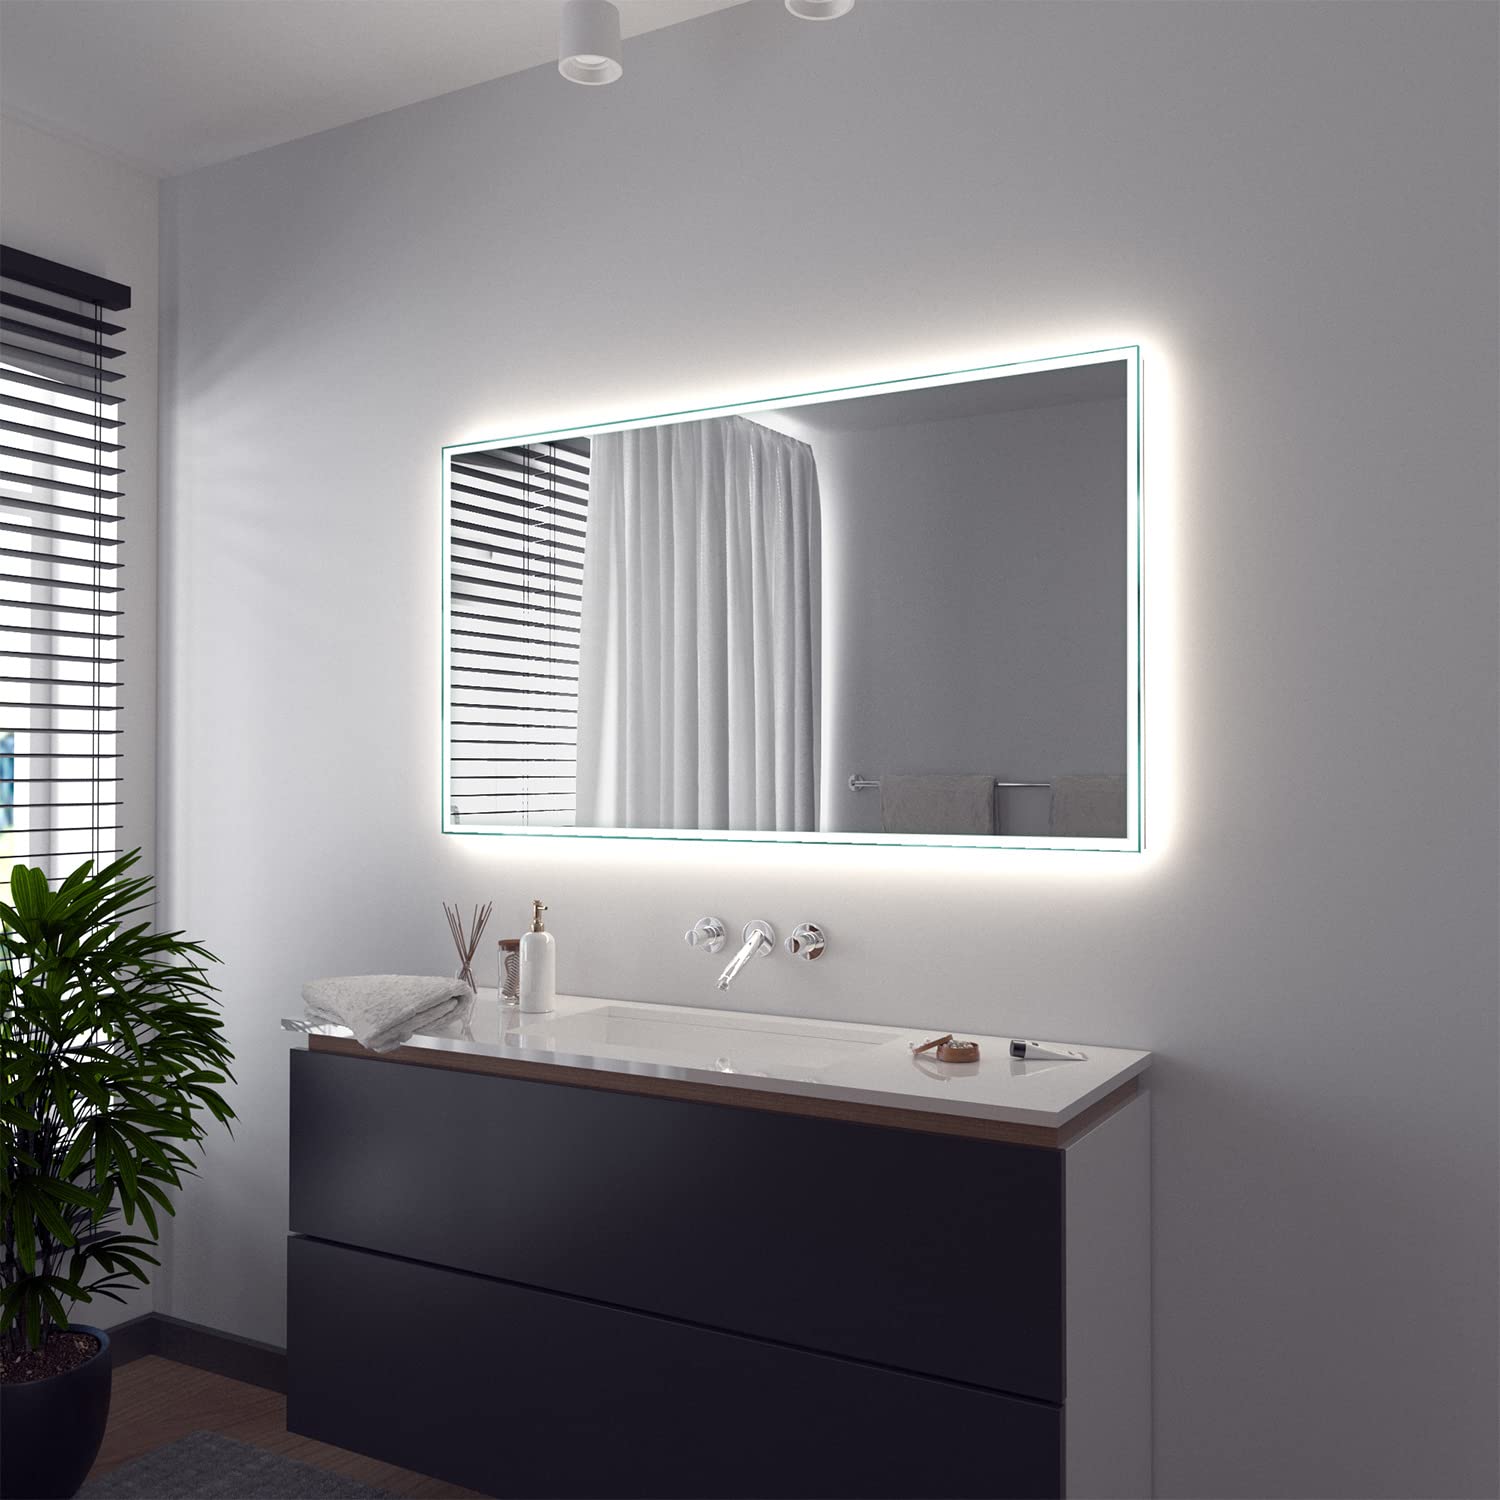 SARAR Wandspiegel mit rundum LED-Beleuchtung 120x90 cm Made in Germany Vittoria eckiger Badspiegel Spiegel mit Beleuchtung Badezimmerspiegel